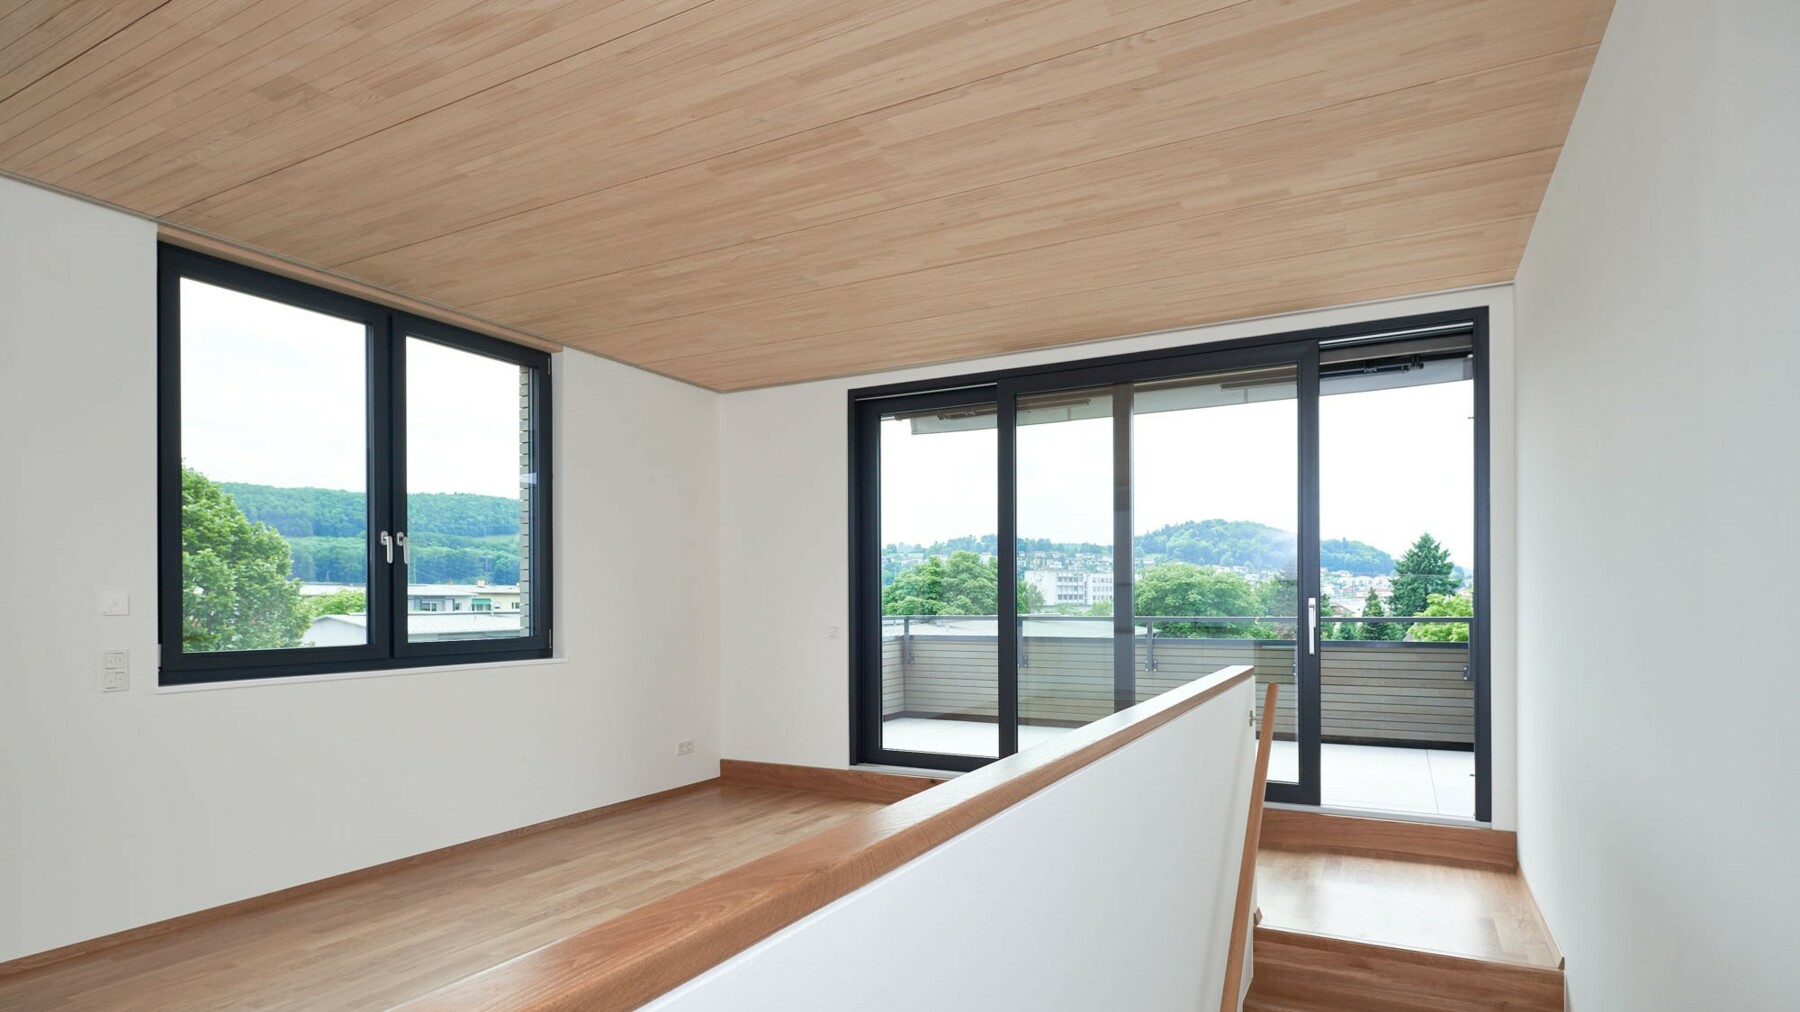 Die dunklen Fensterrahmen, Decken und Böden in angenehmem Holz und helle Wände sorgen für ein harmonisches Zusammenspiel.